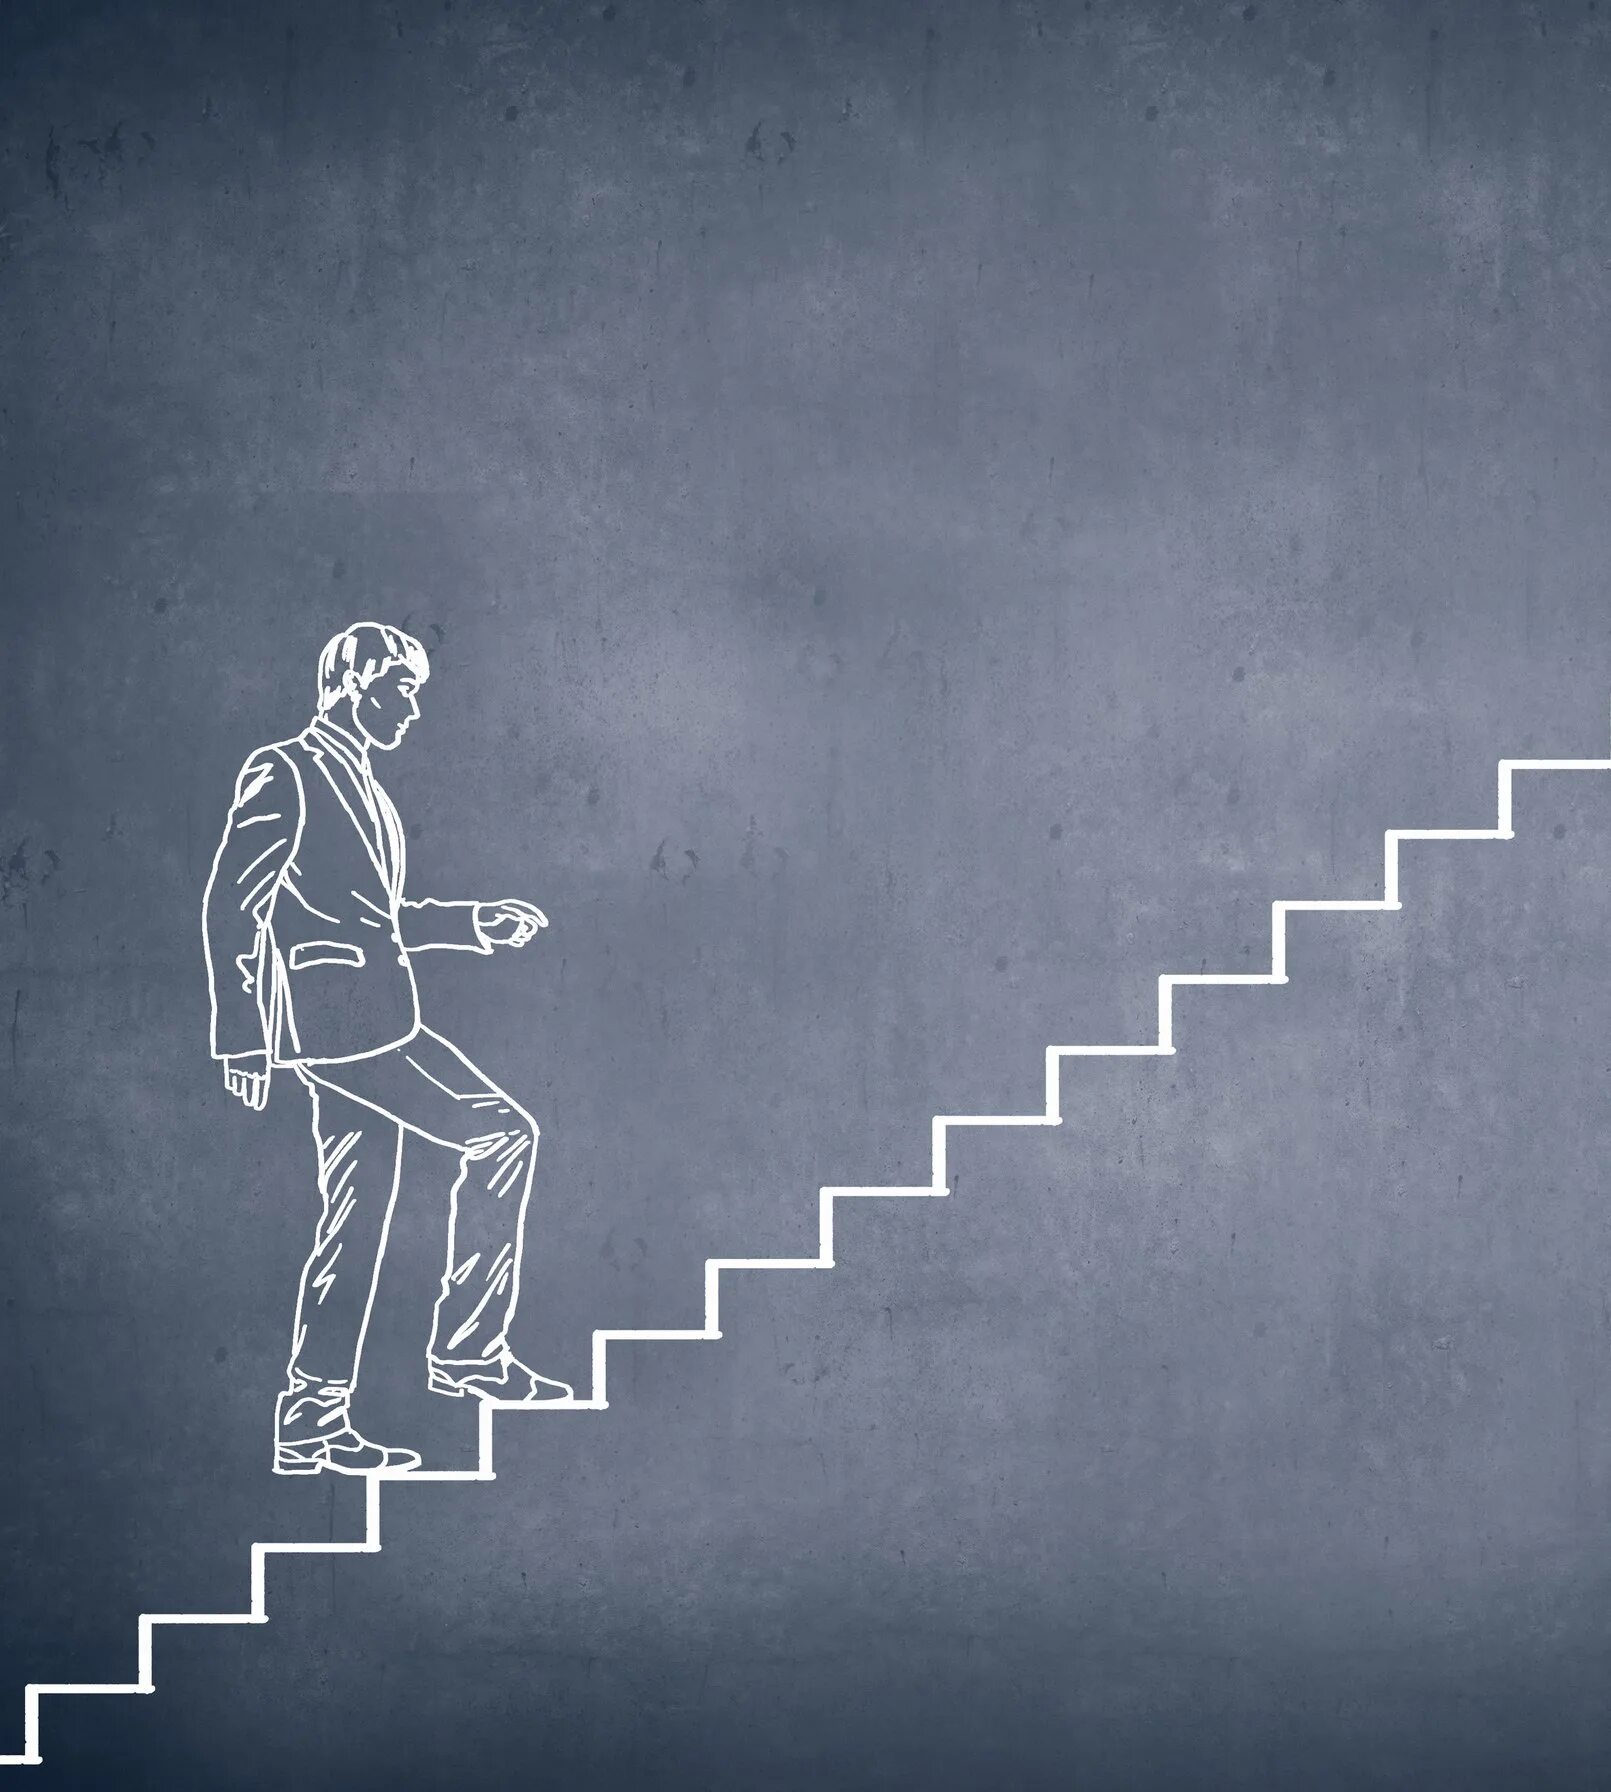 Жизнь постоянное движение. Человек на лестнице. Личностный рост. Лестница саморазвития. Достижение цели.